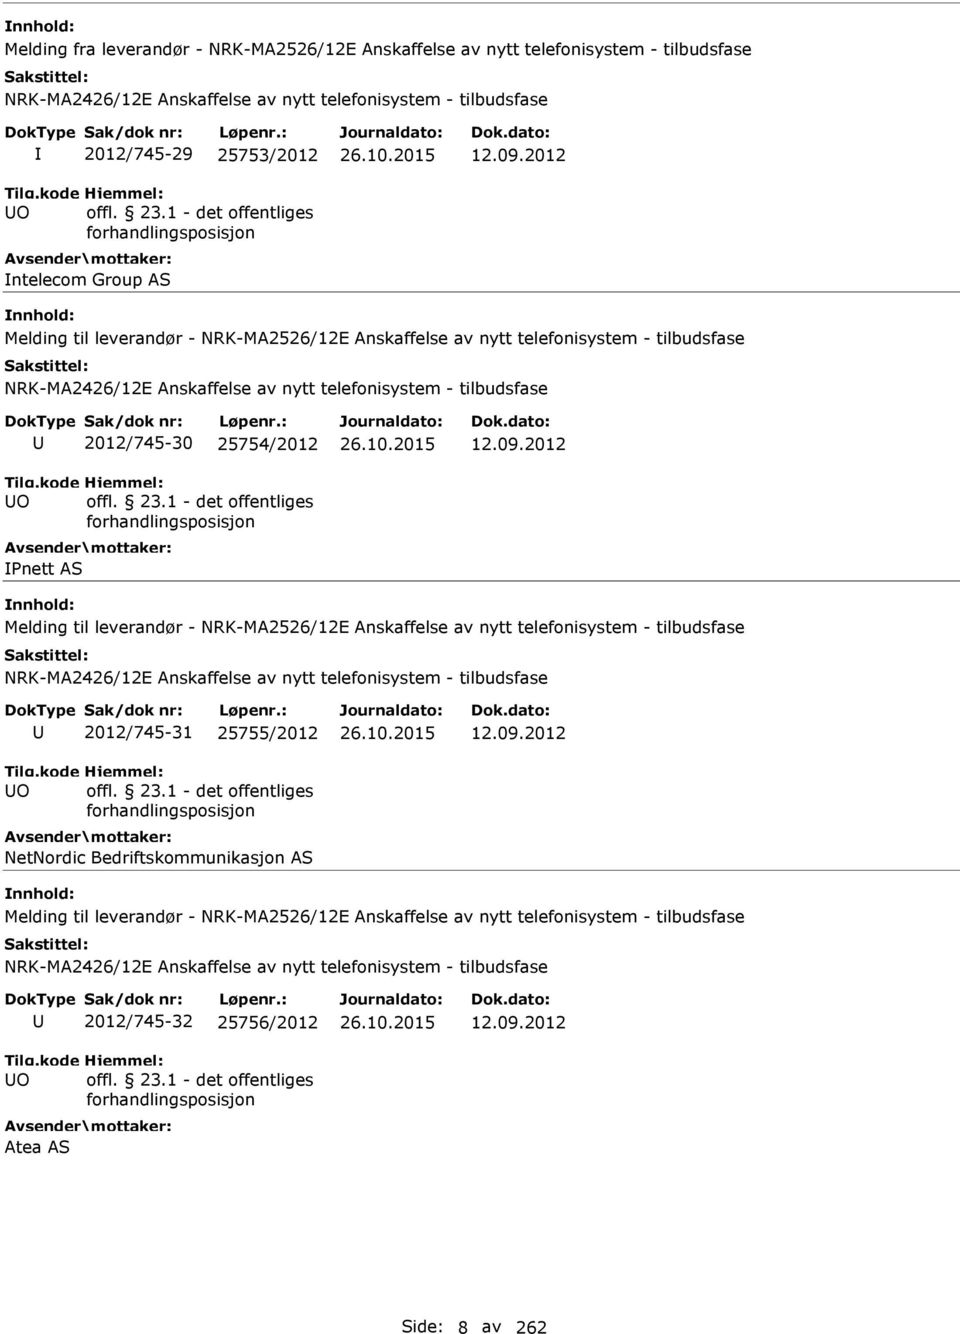 2012 Melding til leverandør - NRK-MA2526/12E Anskaffelse av nytt telefonisystem - tilbudsfase O 2012/745-31 25755/2012 NetNordic